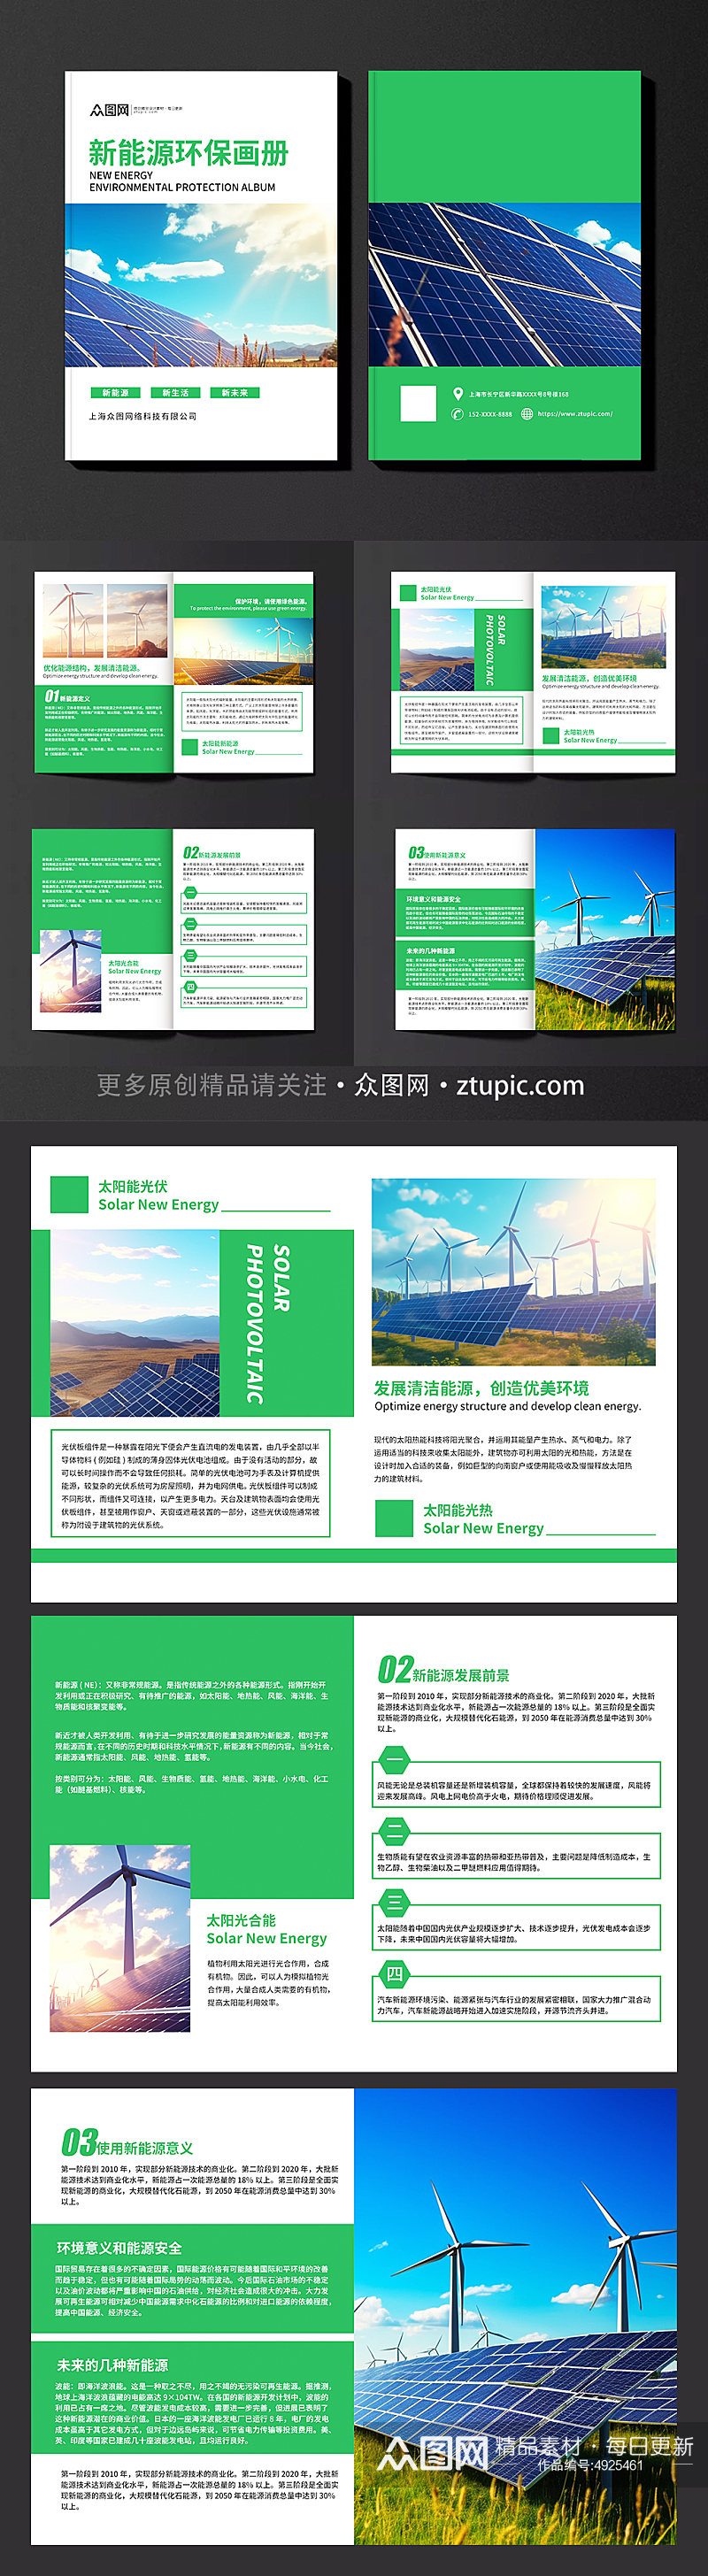 简约新能源环保宣传画册素材